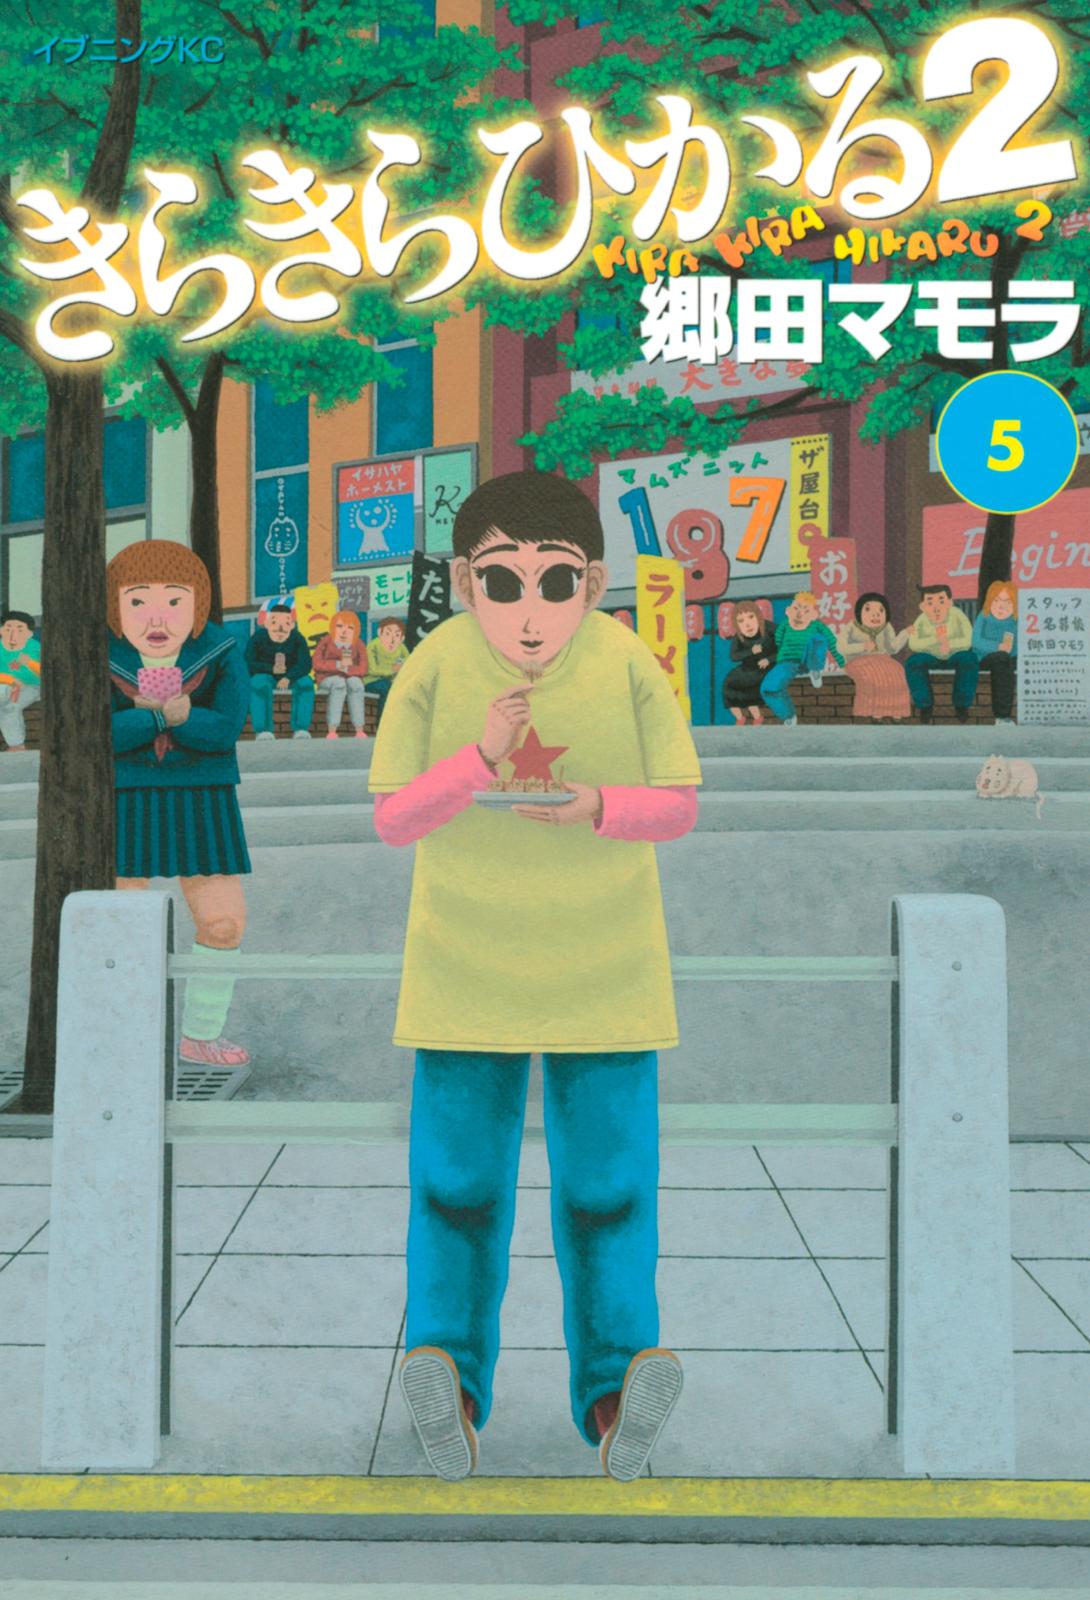 きらきらひかる２ 郷田マモラ 著 電子書籍で漫画 コミックを読むならmusic Jp